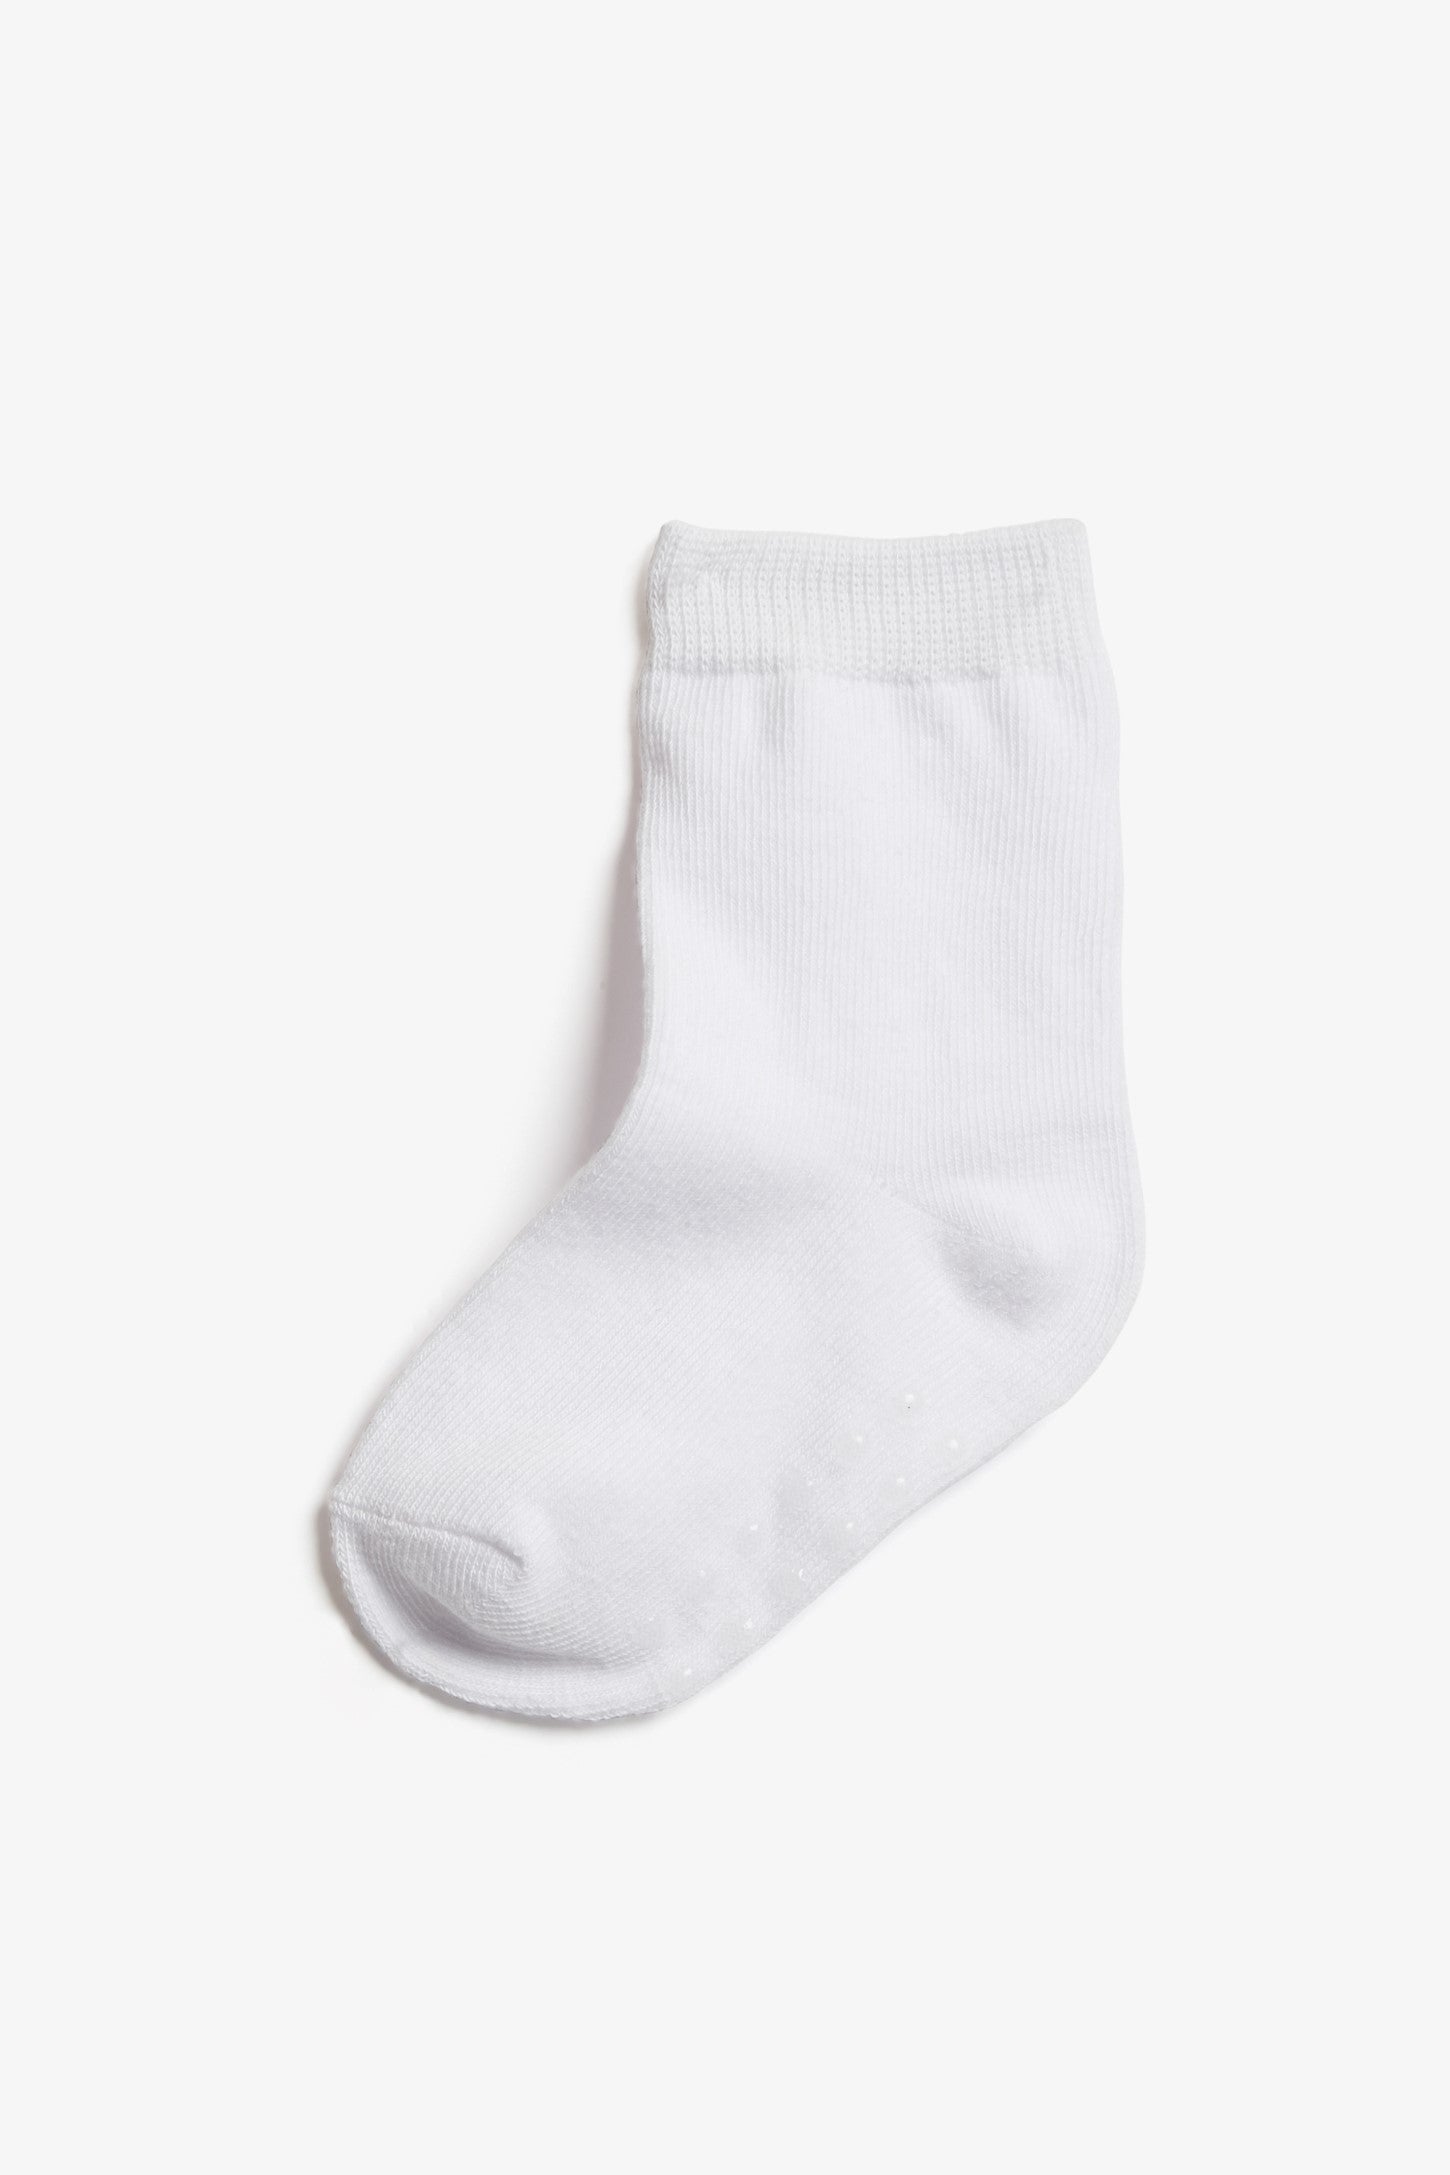 Chaussettes antidérapantes pour bébé, douces et respirantes, absorbant la  sueur, confortables pour garçons et filles, pour adultes, avec fond en  Silicone antidérapant - AliExpress